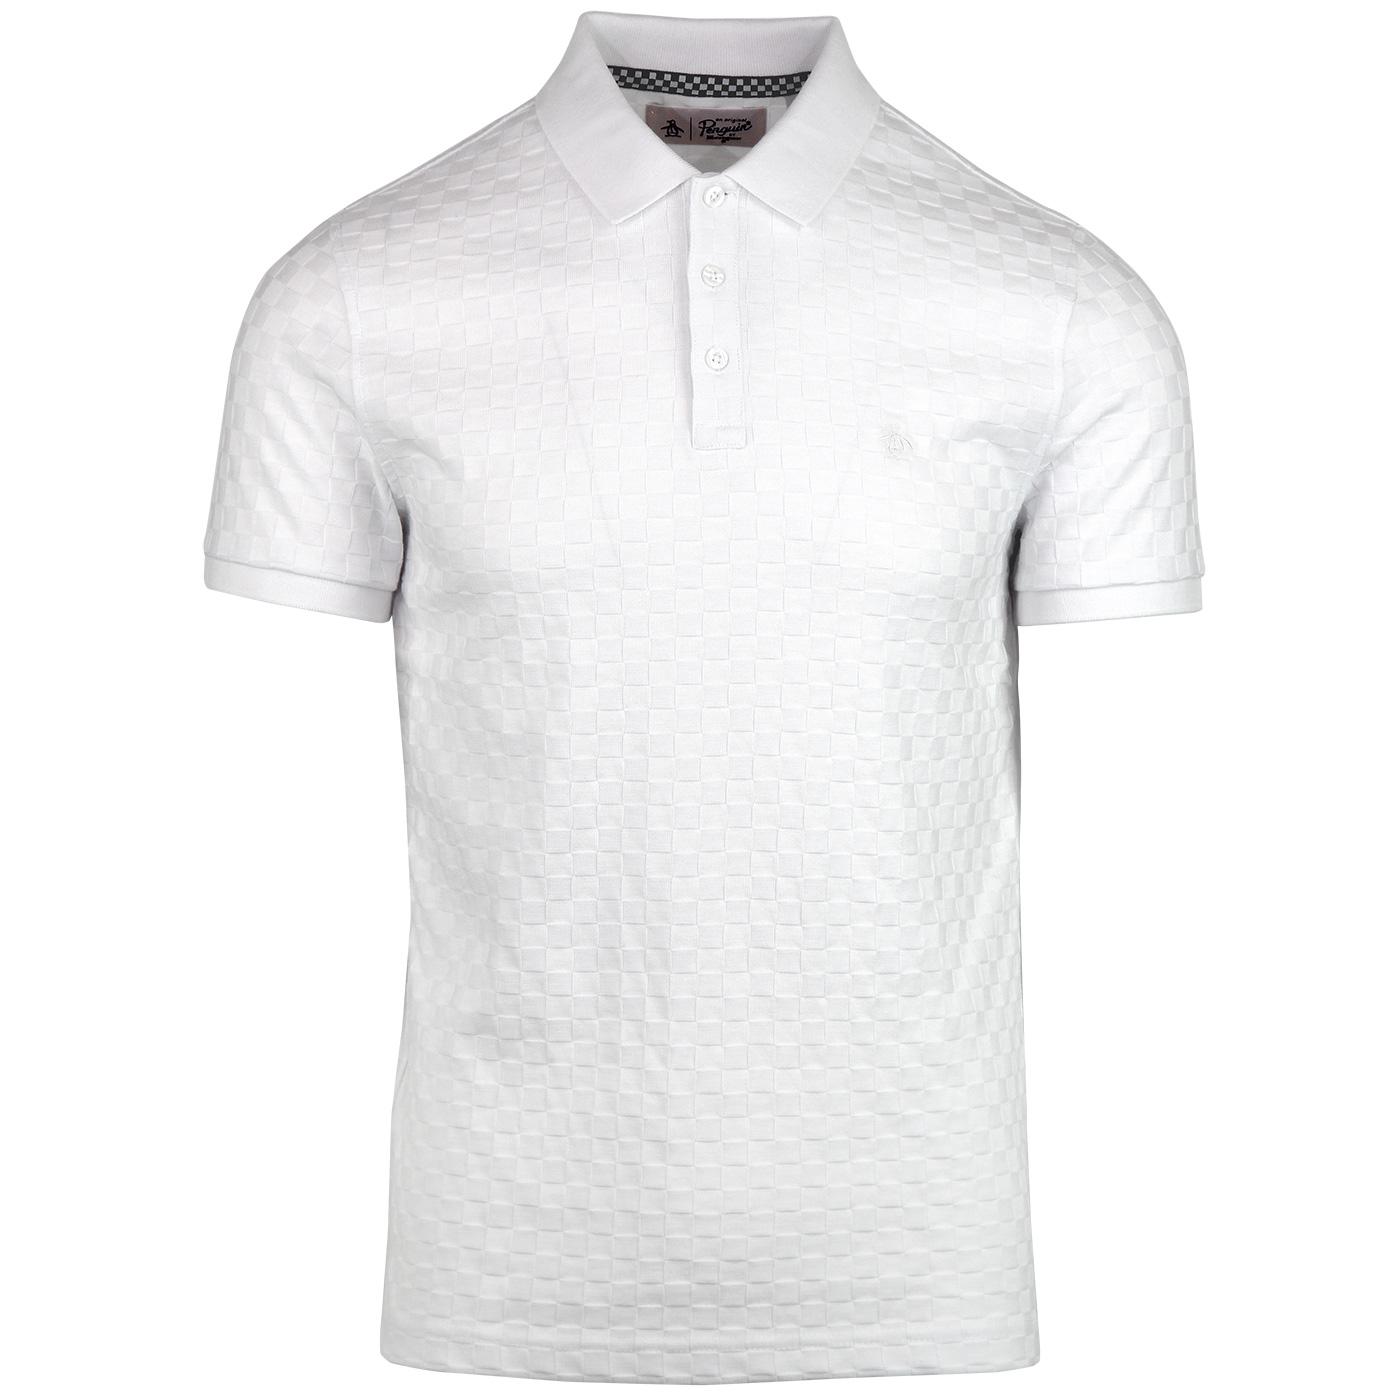 ORIGINAL PENGUIN Tonal Check Jersey Polo in Bright White